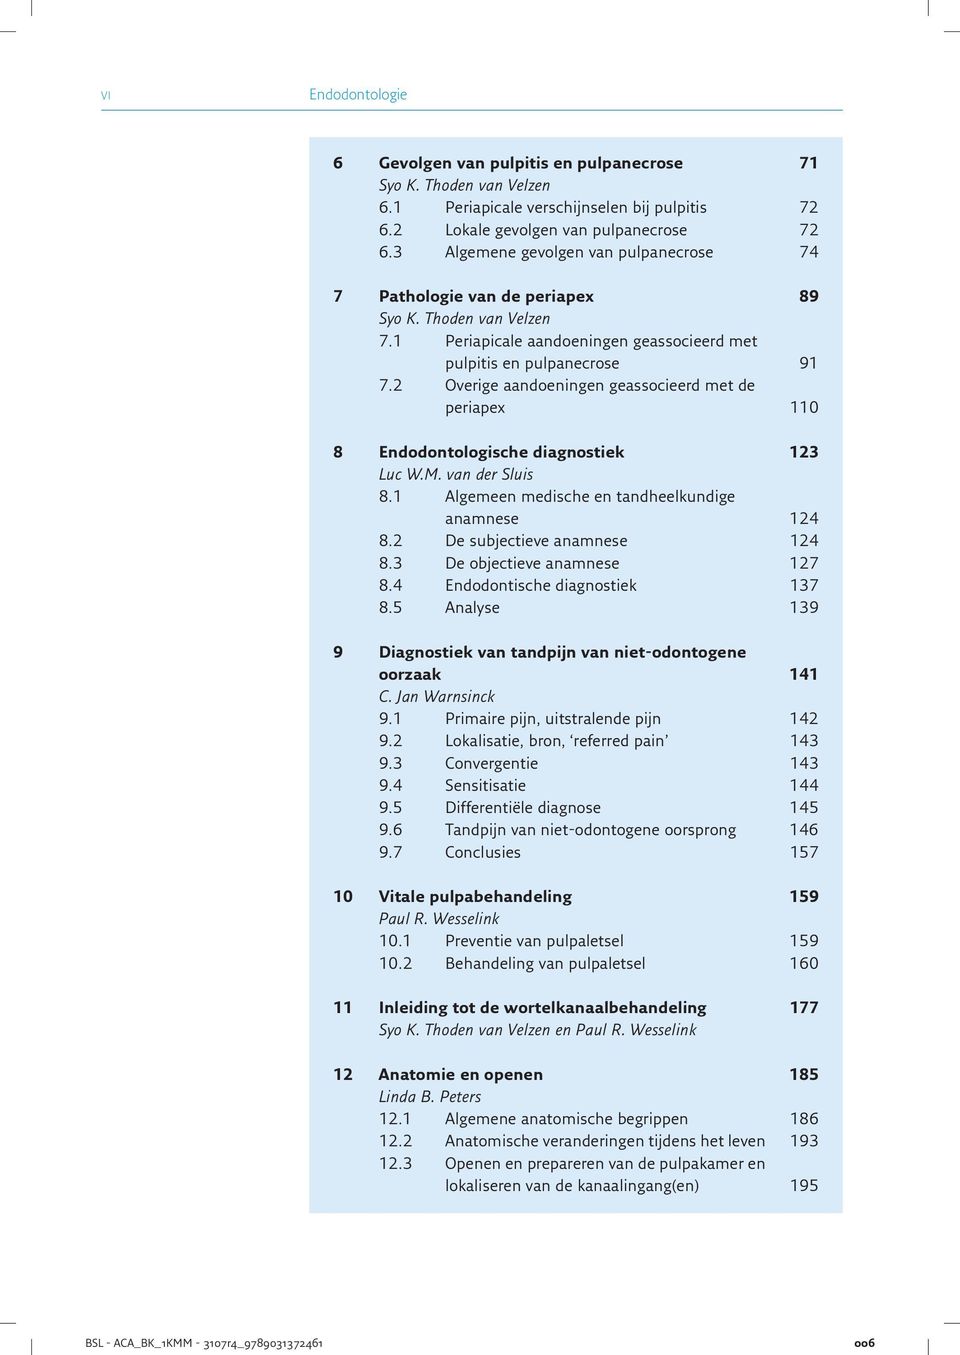 2 Overige aandoeningen geassocieerd met de periapex 110 8 Endodontologische diagnostiek 123 Luc W.M. van der Sluis 8.1 Algemeen medische en tandheelkundige anamnese 124 8.